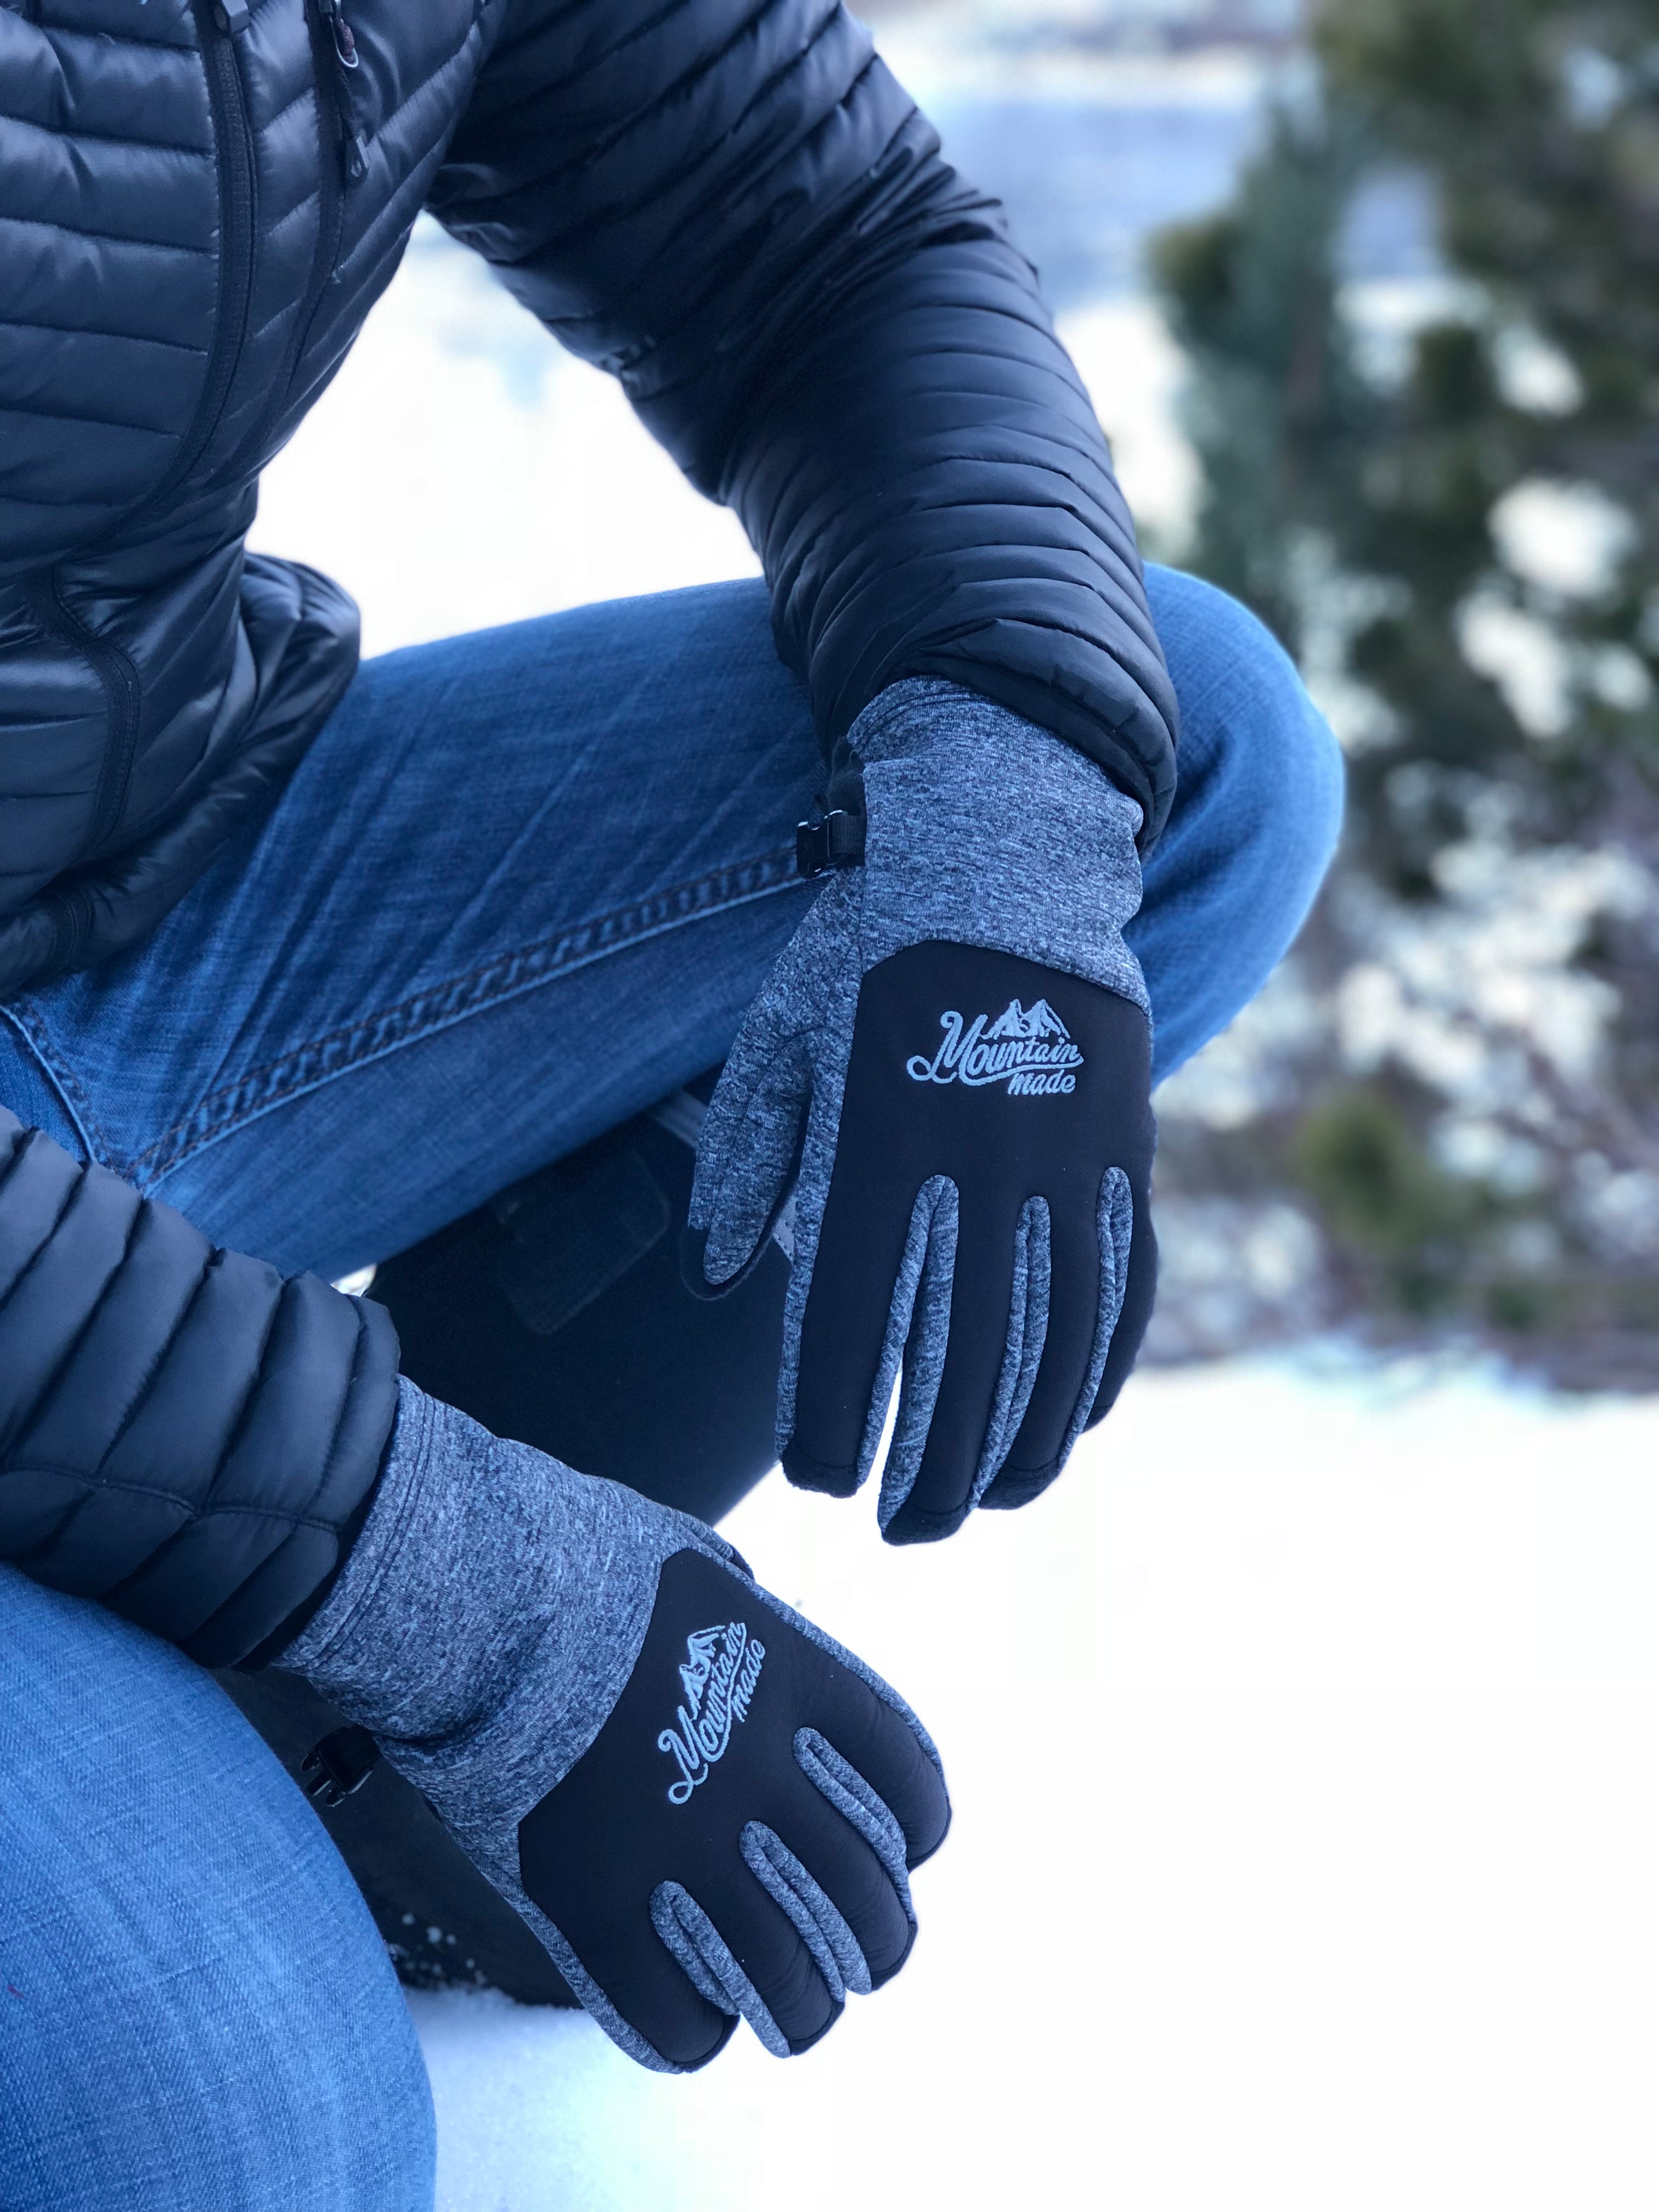 Bierstadt Gloves Pack of 4 + FREE SHIPPING! | Mountain Made | Fleecehandschuhe